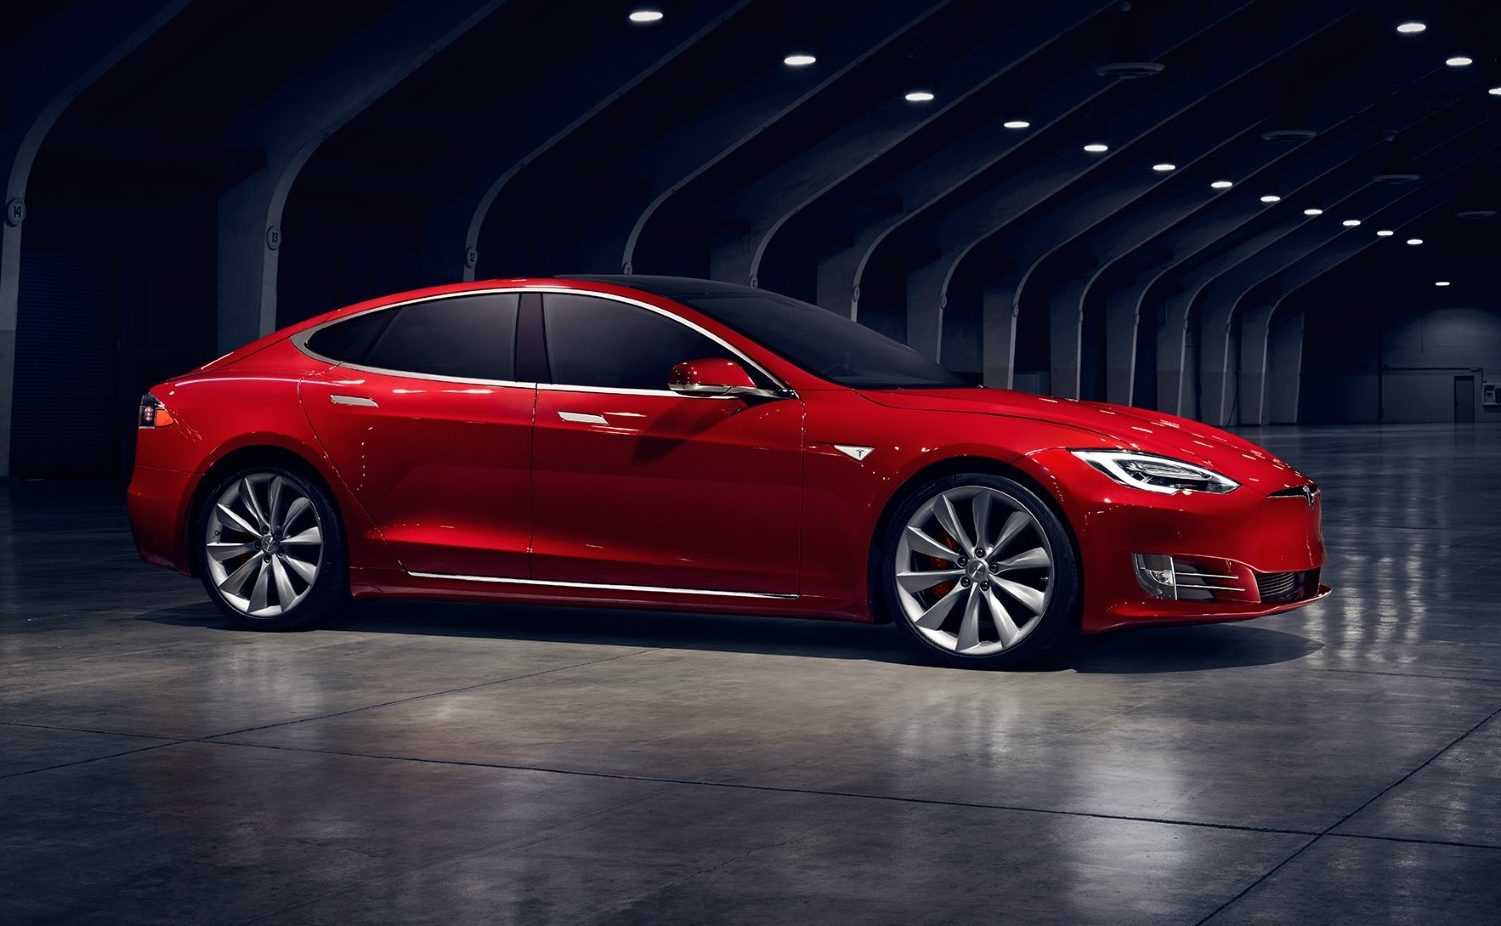 Tegen de wil Grote hoeveelheid petticoat Elon Musk verlaagt prijs nieuwe Tesla Model S naar $69.420